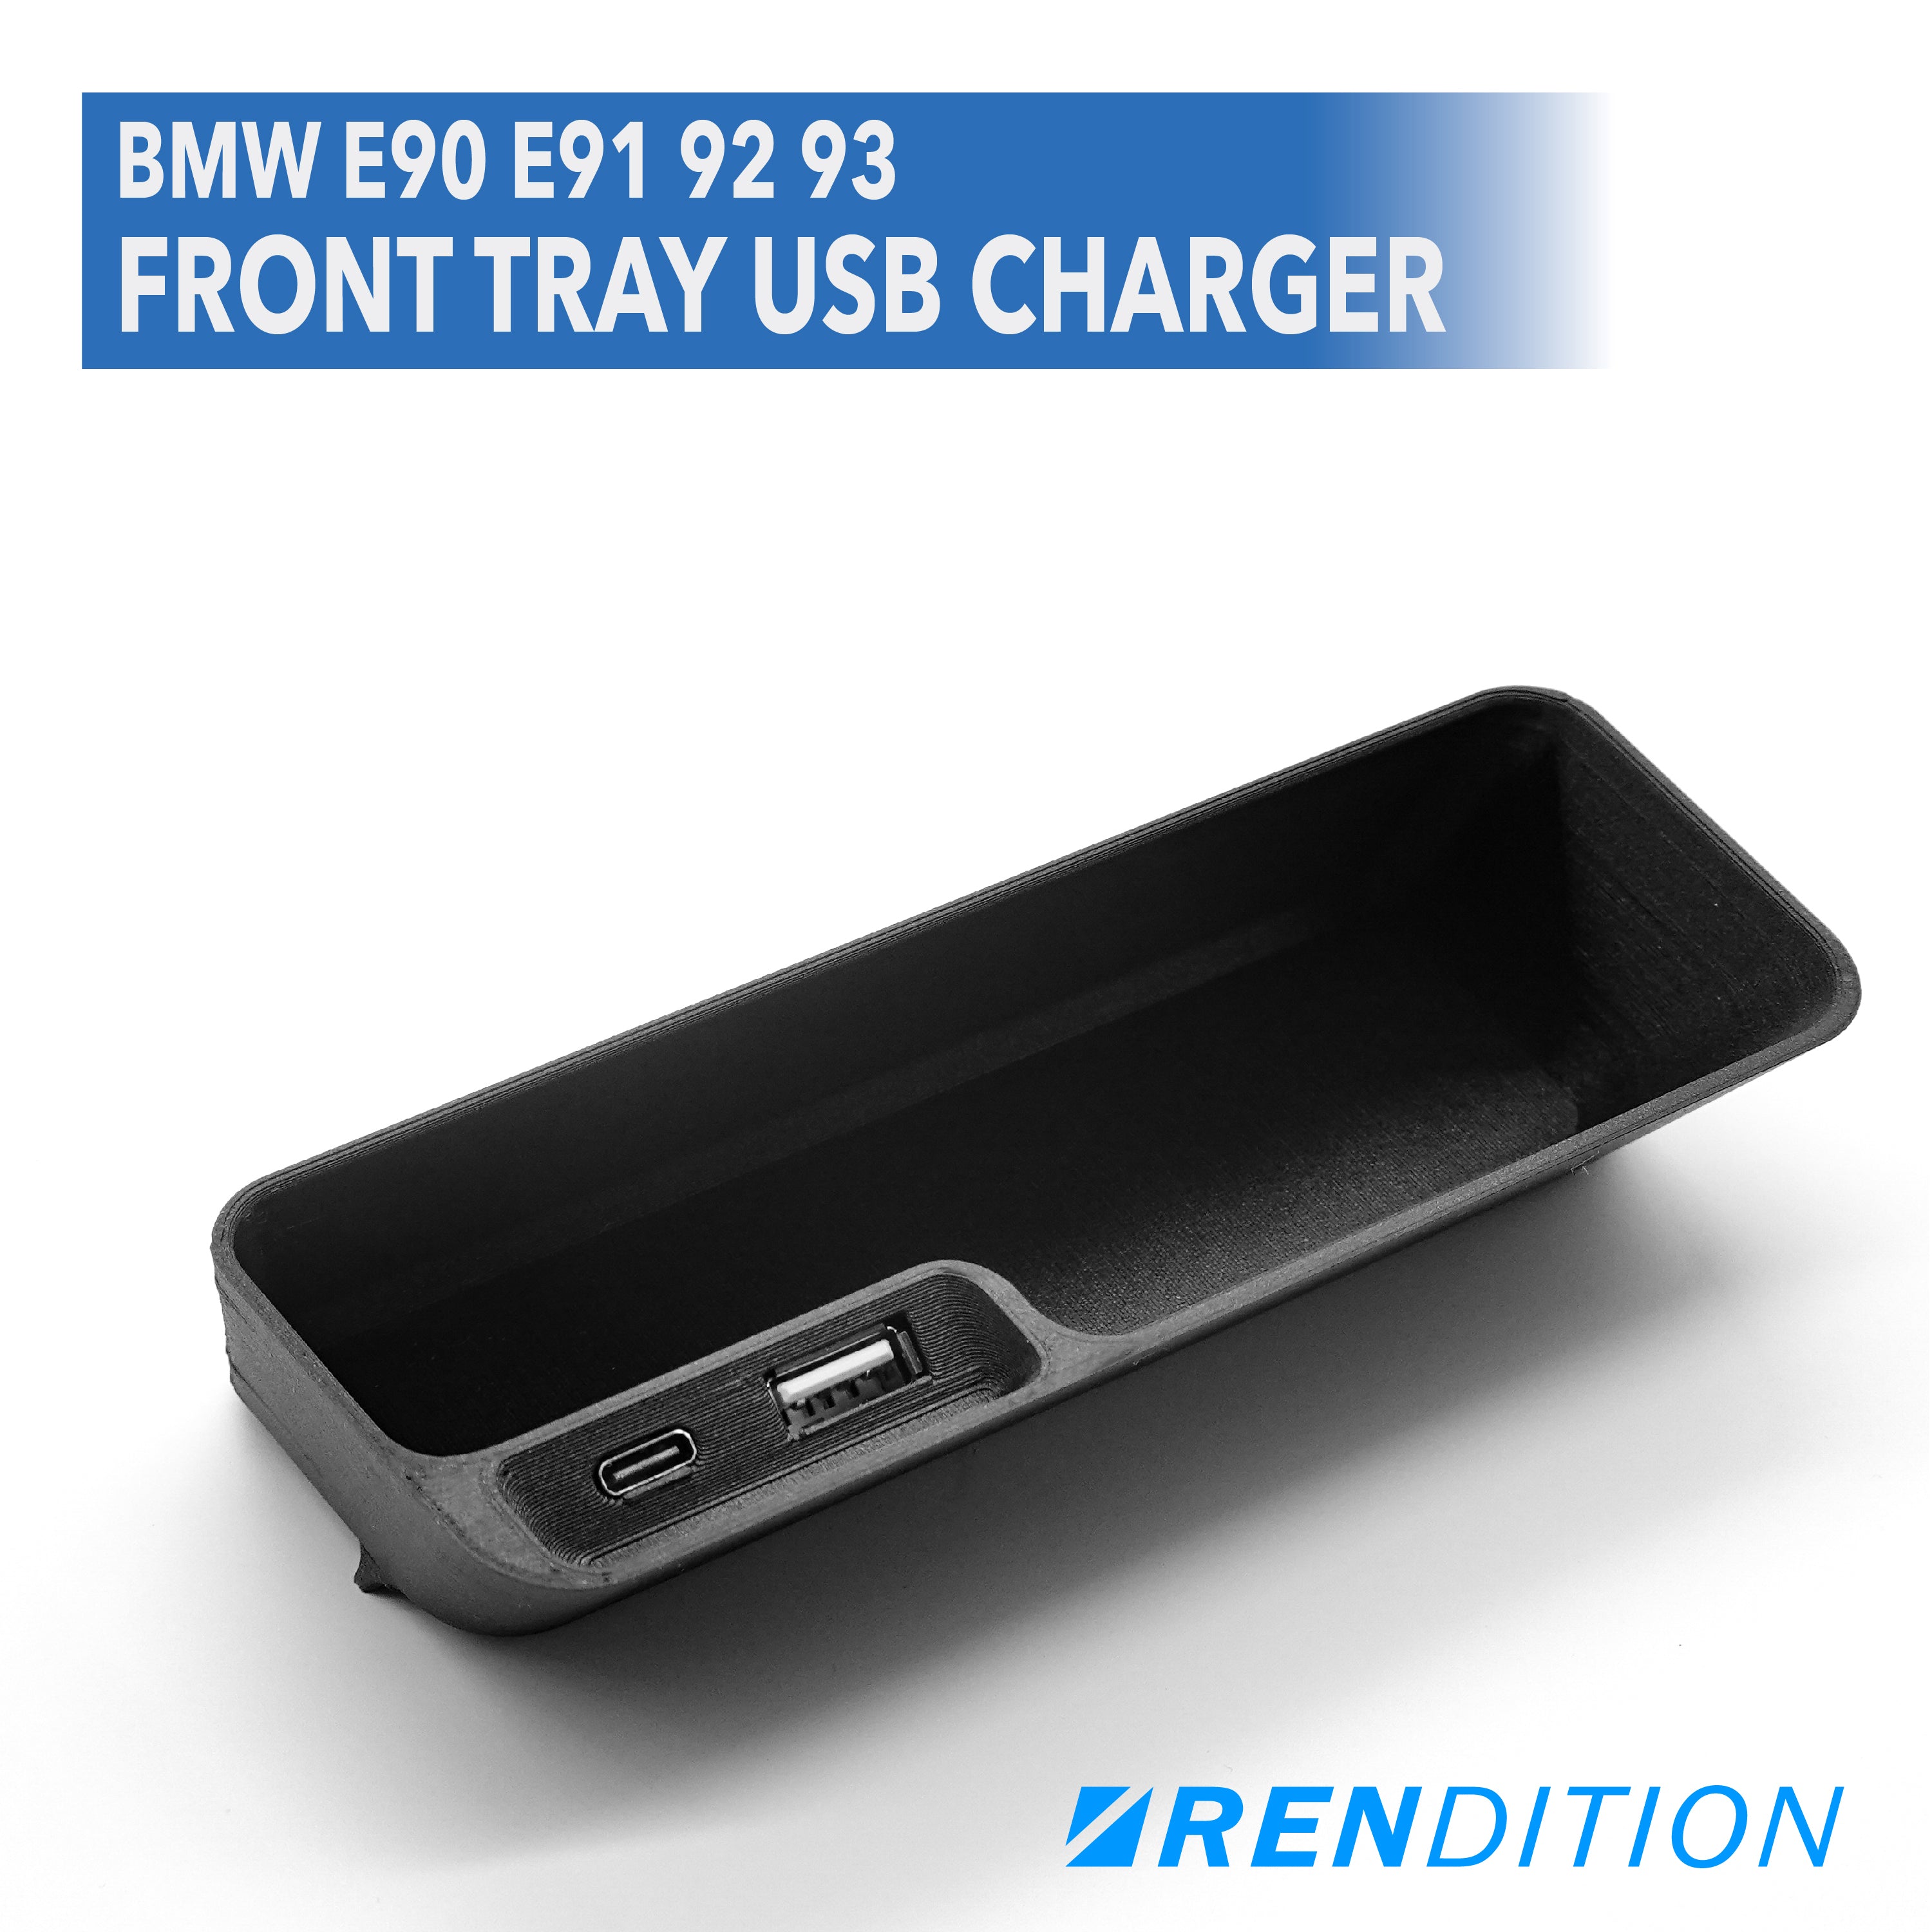 BMW E9X Front Tray USB Charger (E90 E91 E92 E93) – Rendition